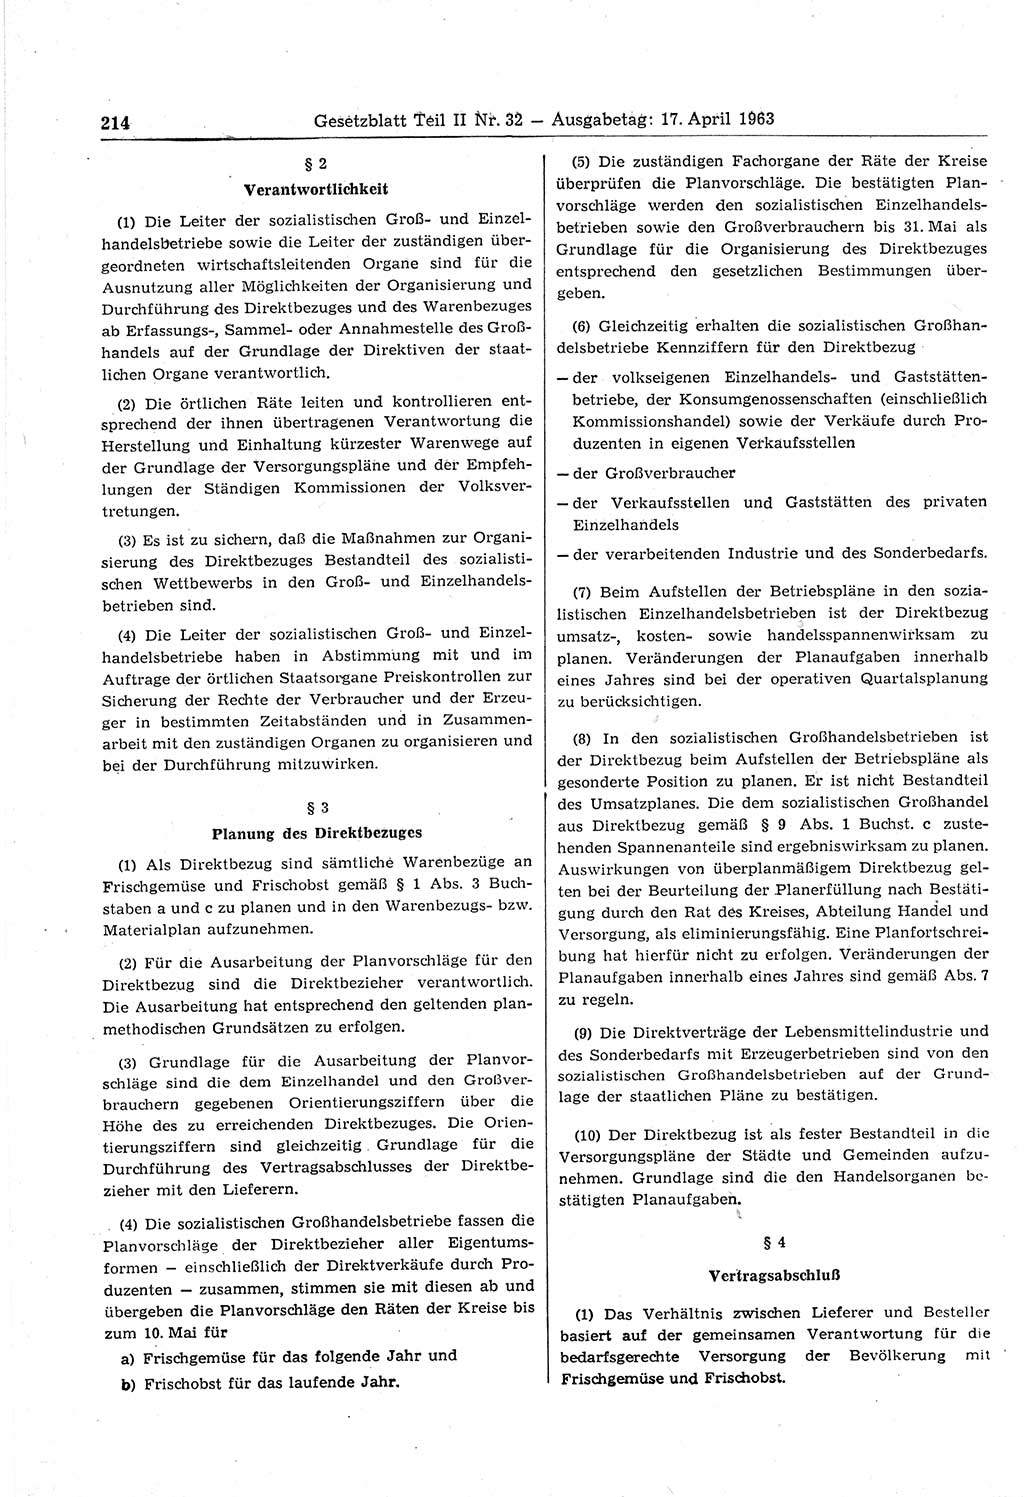 Gesetzblatt (GBl.) der Deutschen Demokratischen Republik (DDR) Teil ⅠⅠ 1963, Seite 214 (GBl. DDR ⅠⅠ 1963, S. 214)